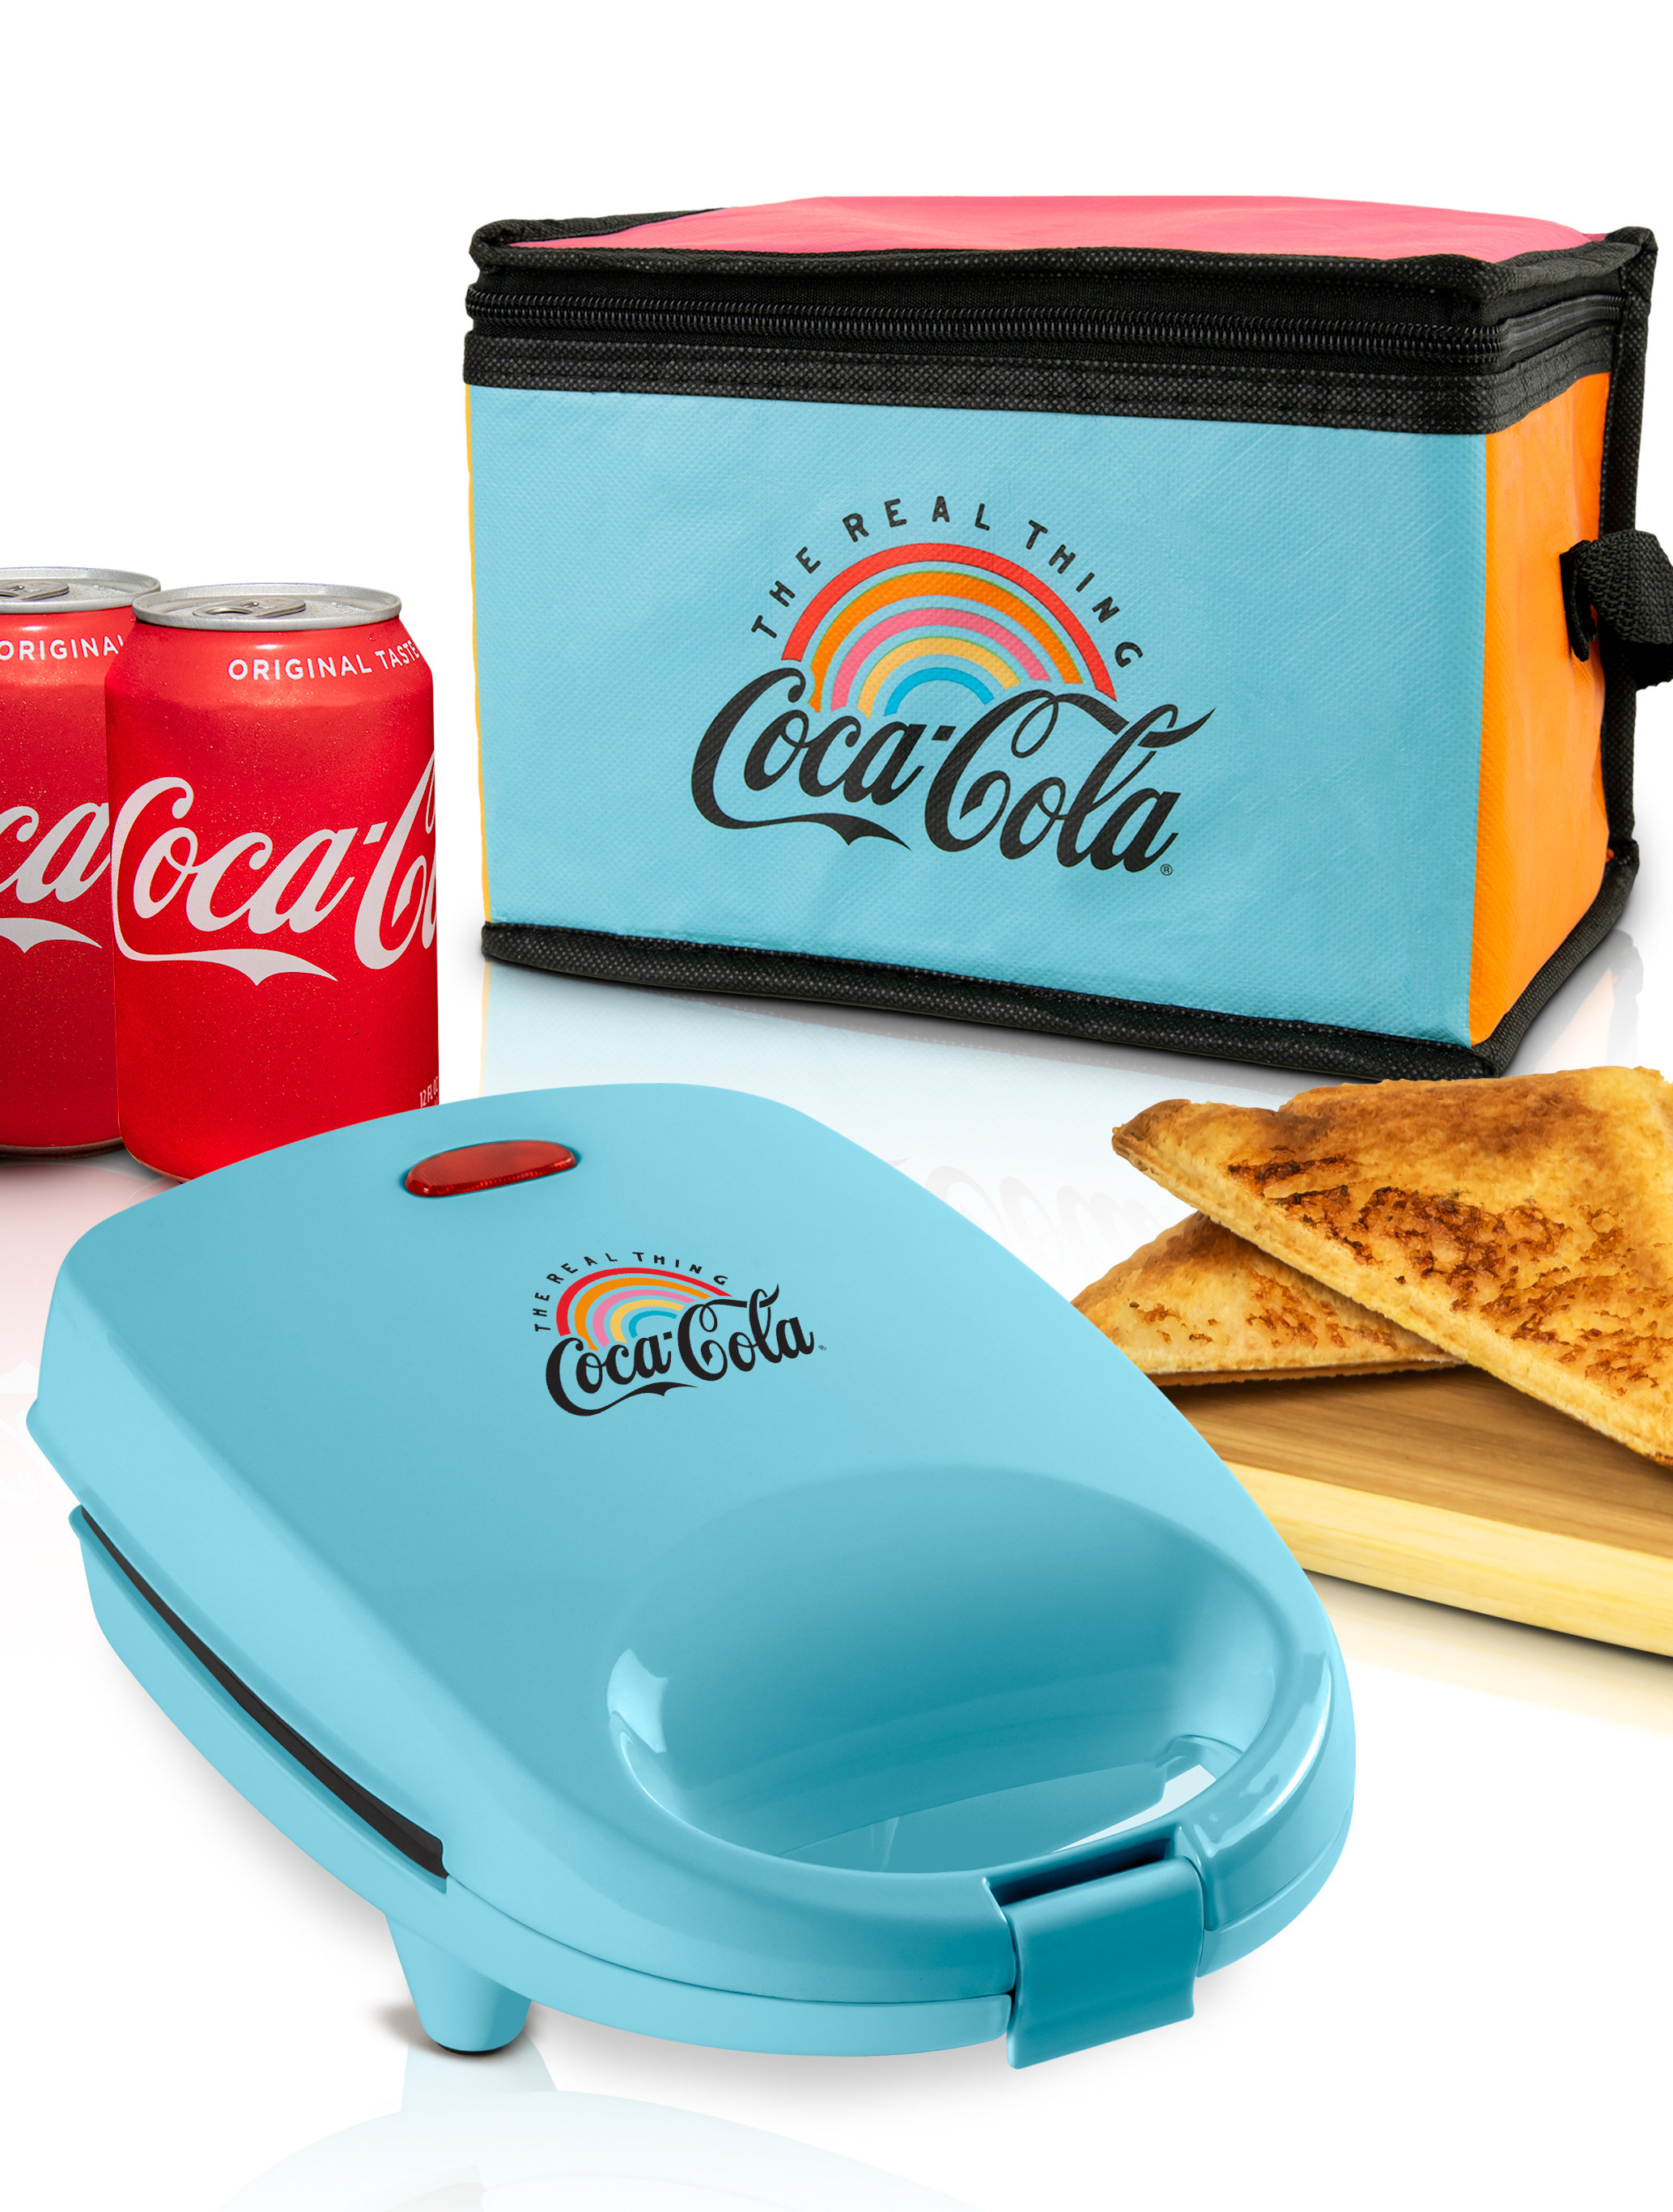 https://assets.wfcdn.com/im/80005302/compr-r85/2168/216821060/coca-cola-sandwich-maker-with-beverage-cooler-bag.jpg